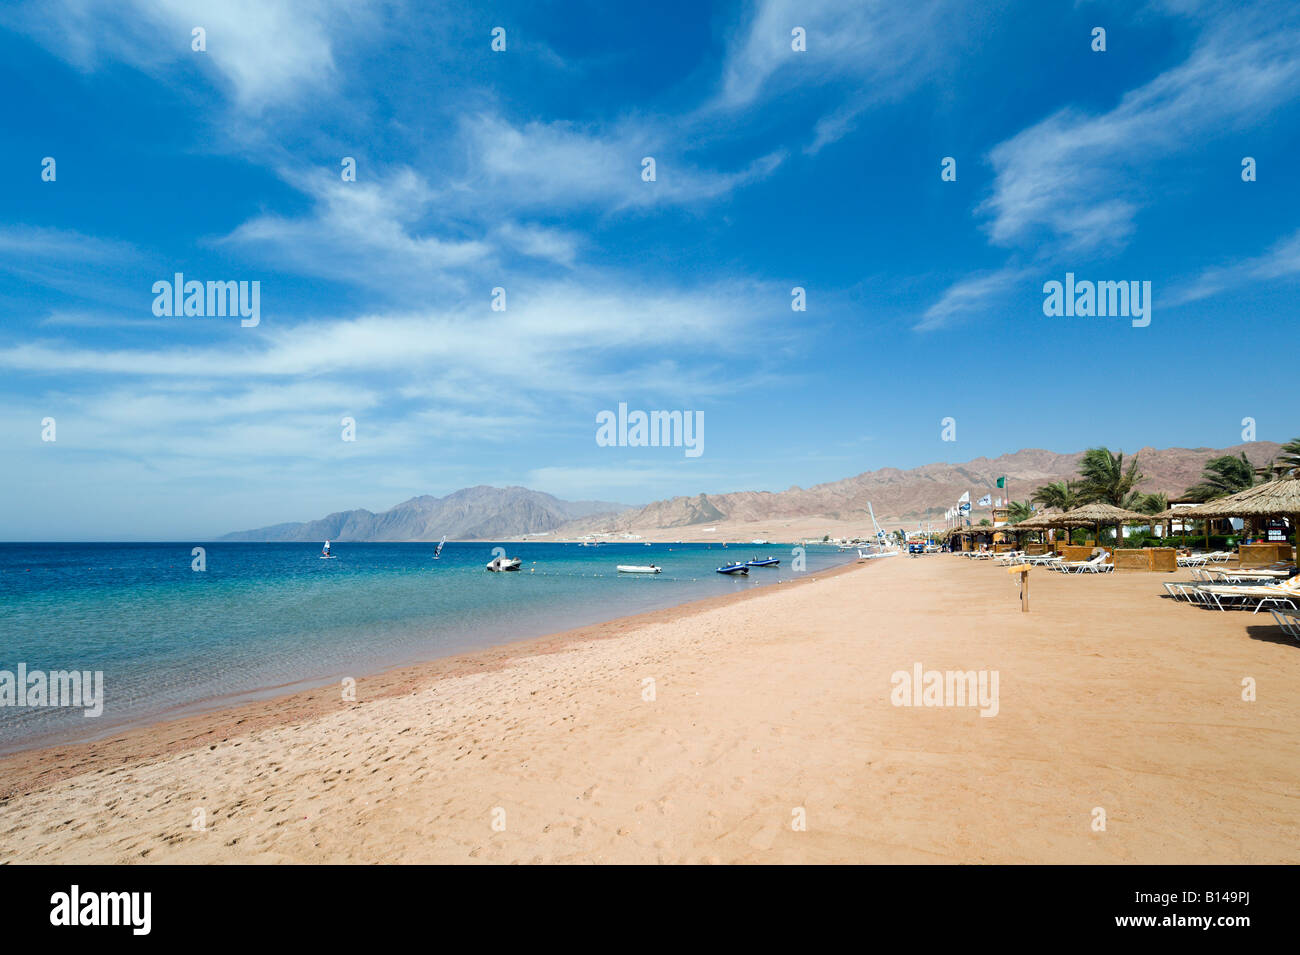 En dehors de la plage, l'hôtel Hilton Dahab Bay, Dahab, côte de la mer Rouge, Egypte Banque D'Images